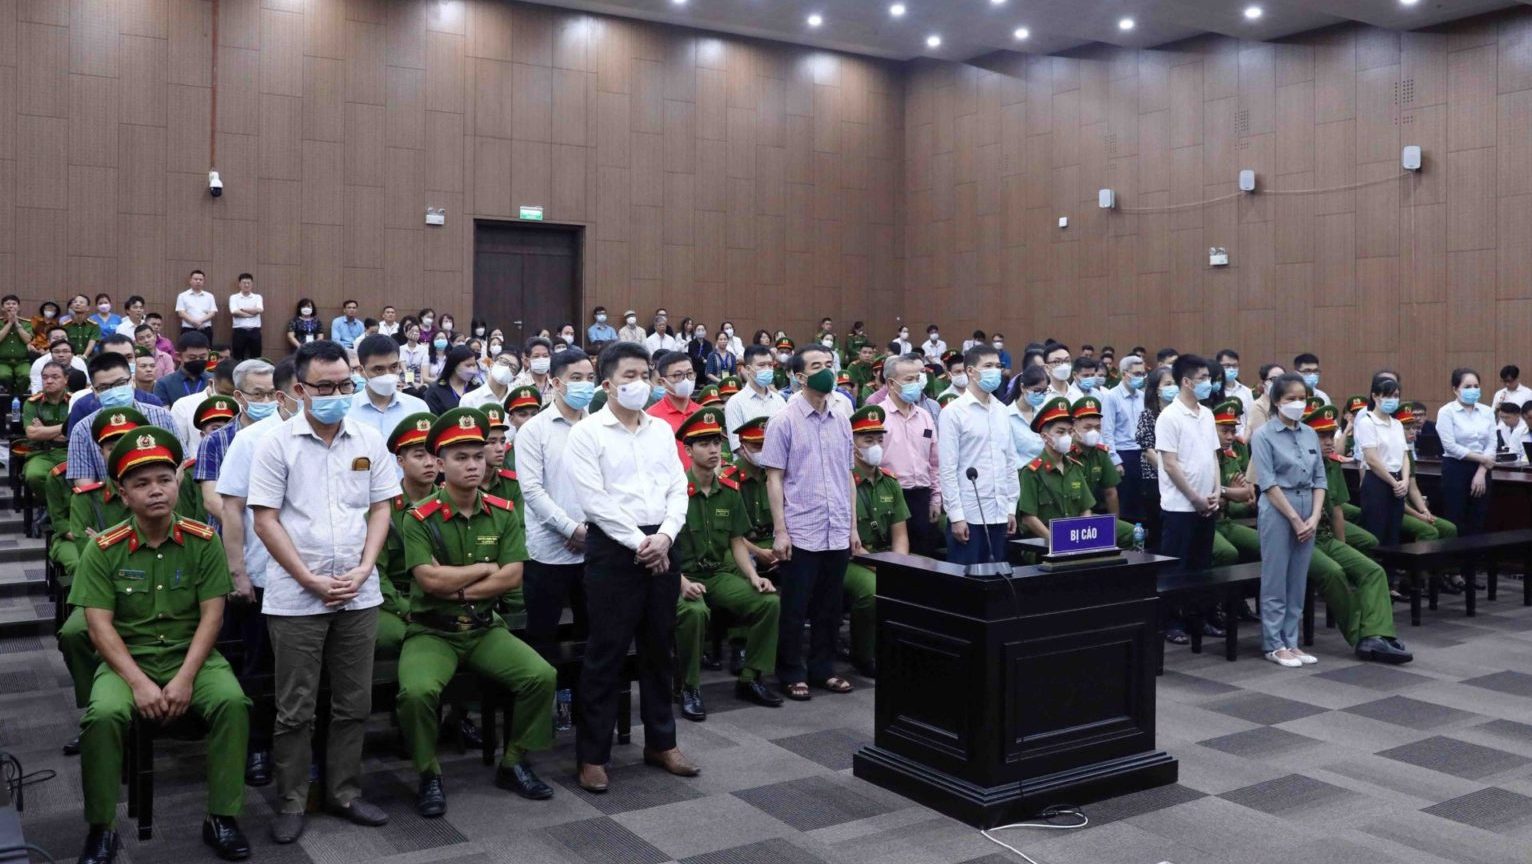 Các bị cáo vụ “chuyến bay giải cứu” bị đưa ra xử tại tòa án Hà Nội. Ảnh: Vietnam News Agency/ AFP via Getty Images